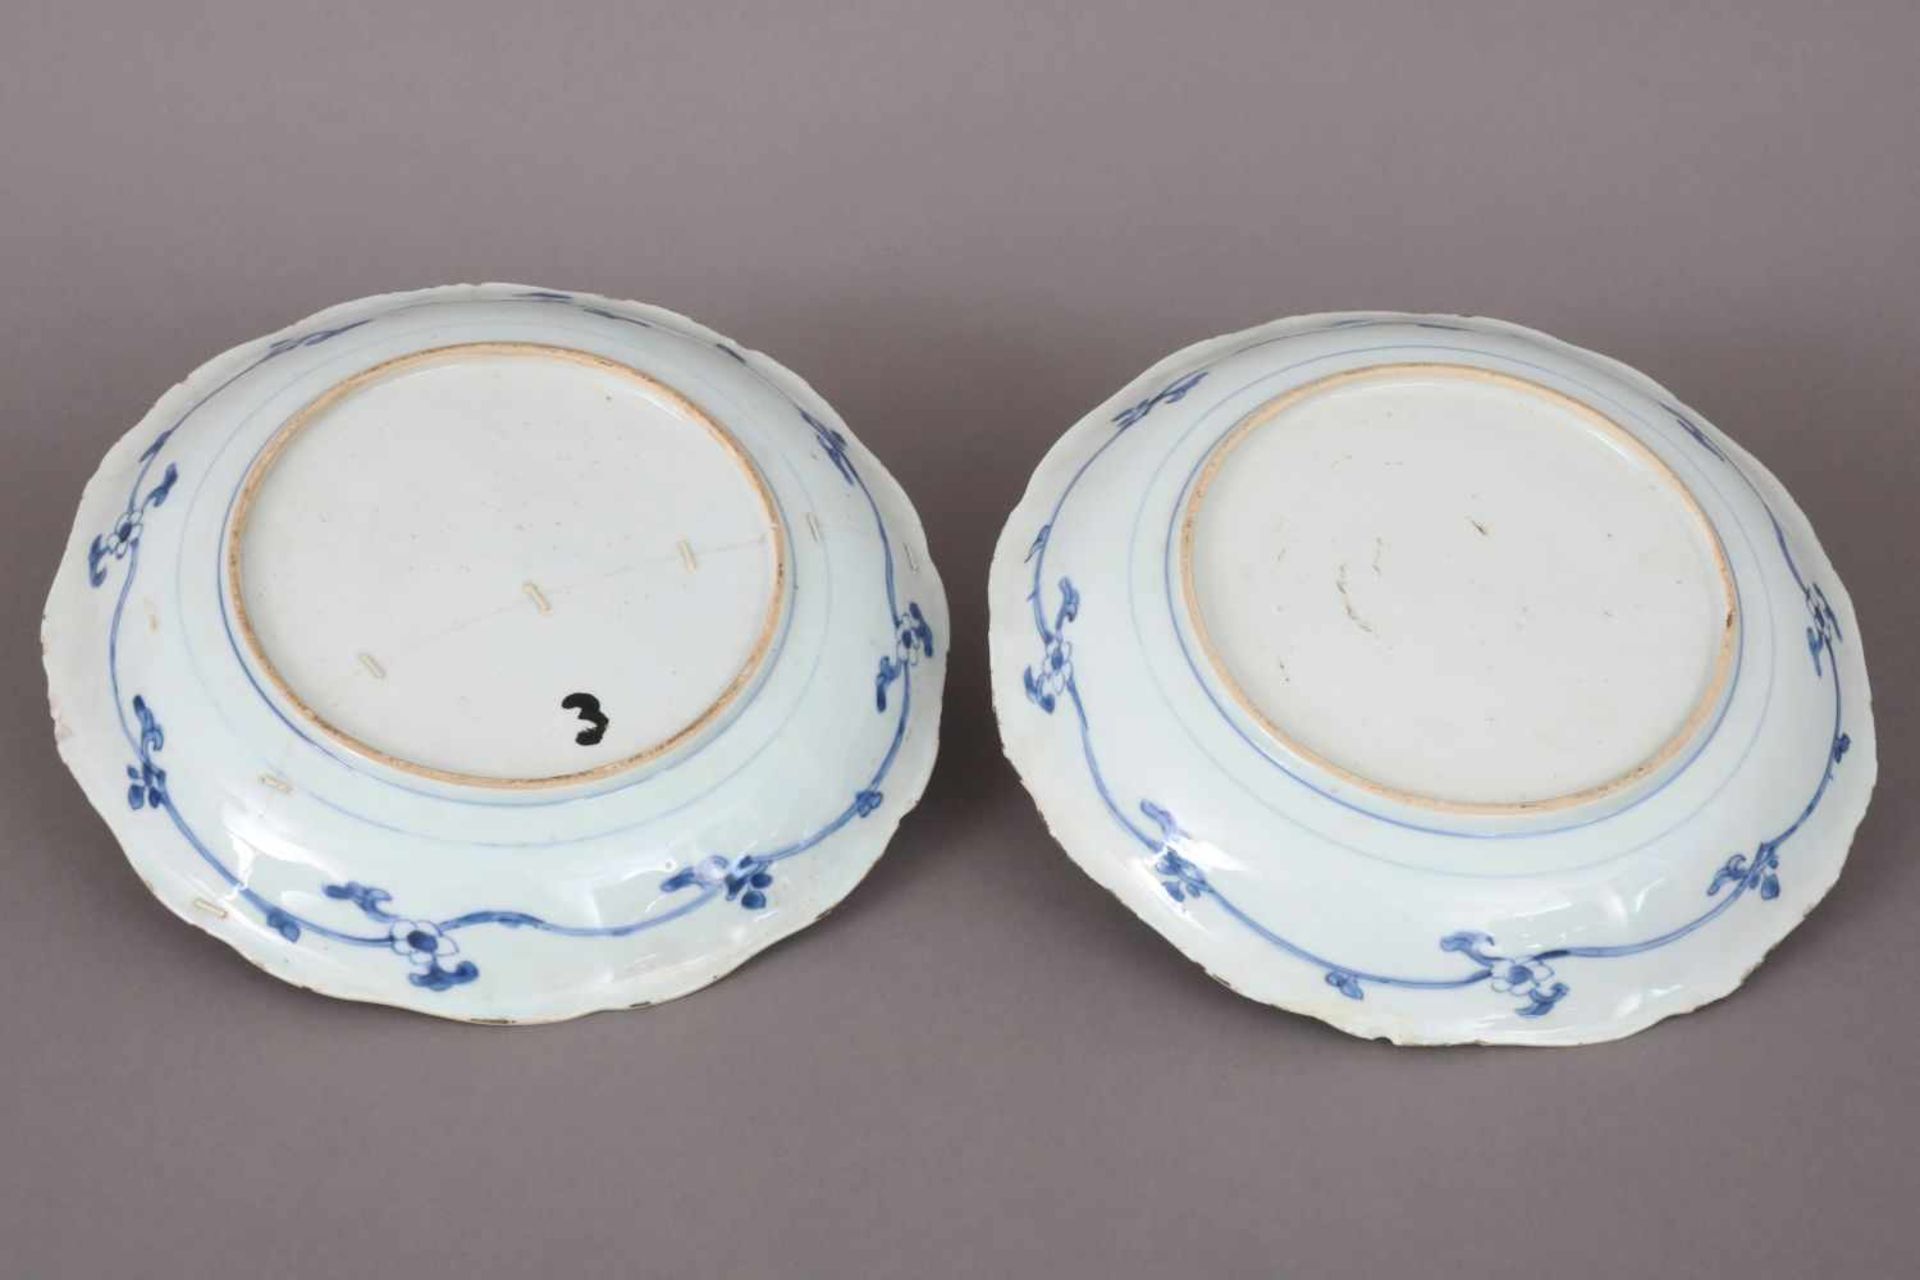 Paar chinesische TellerPorzellan, wohl 18. Jhdt., Blaumalerei, passige, leicht vertiefte Teller - Bild 4 aus 6